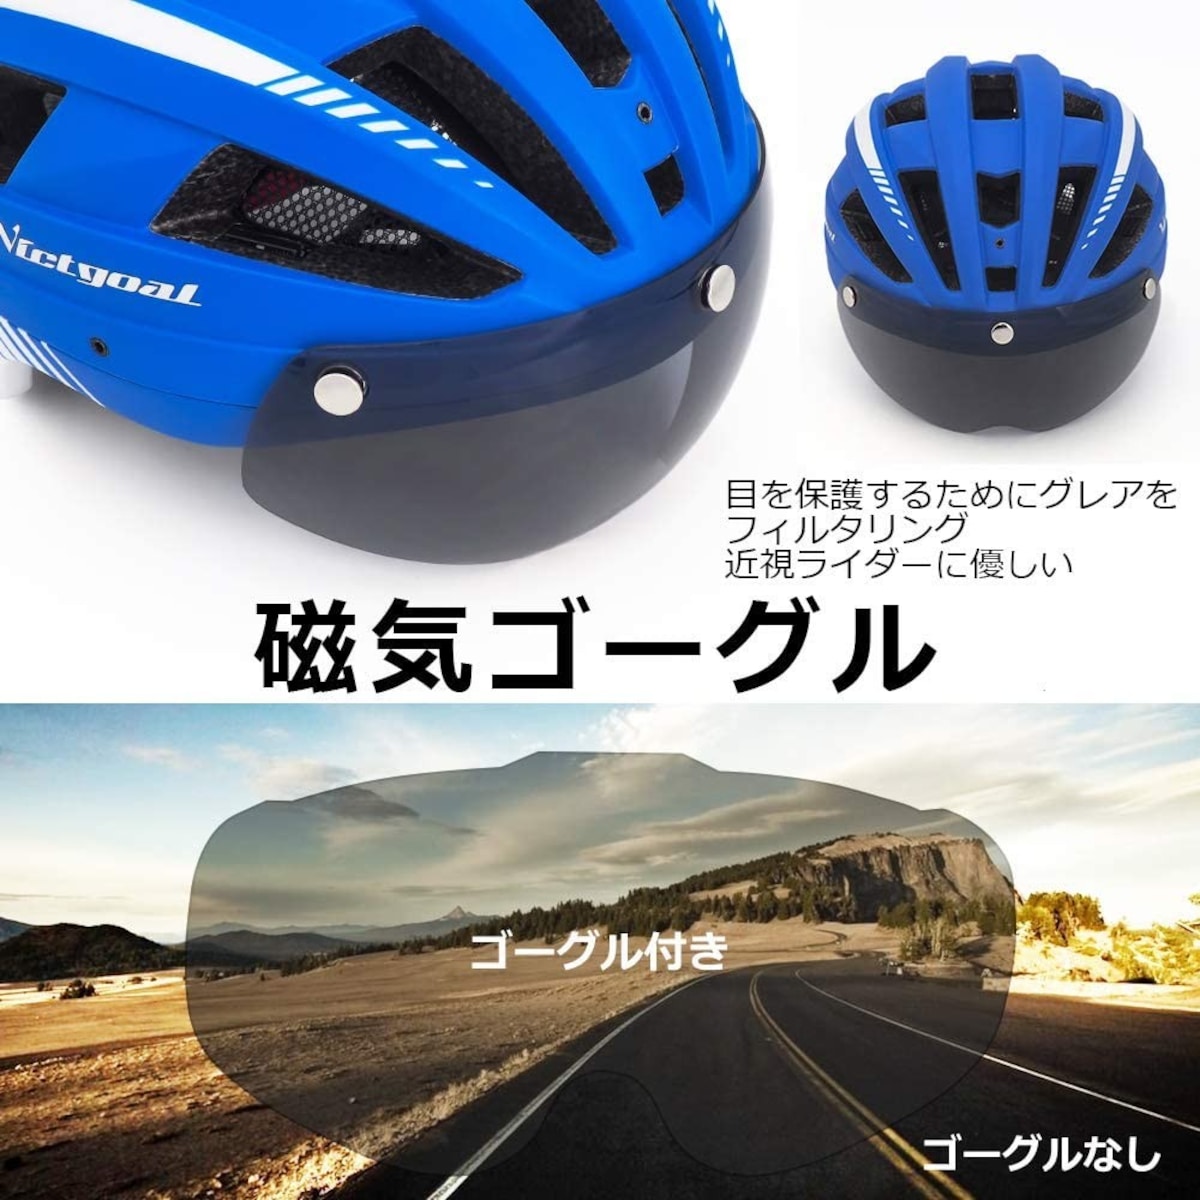  自転車ヘルメット 大人用画像2 